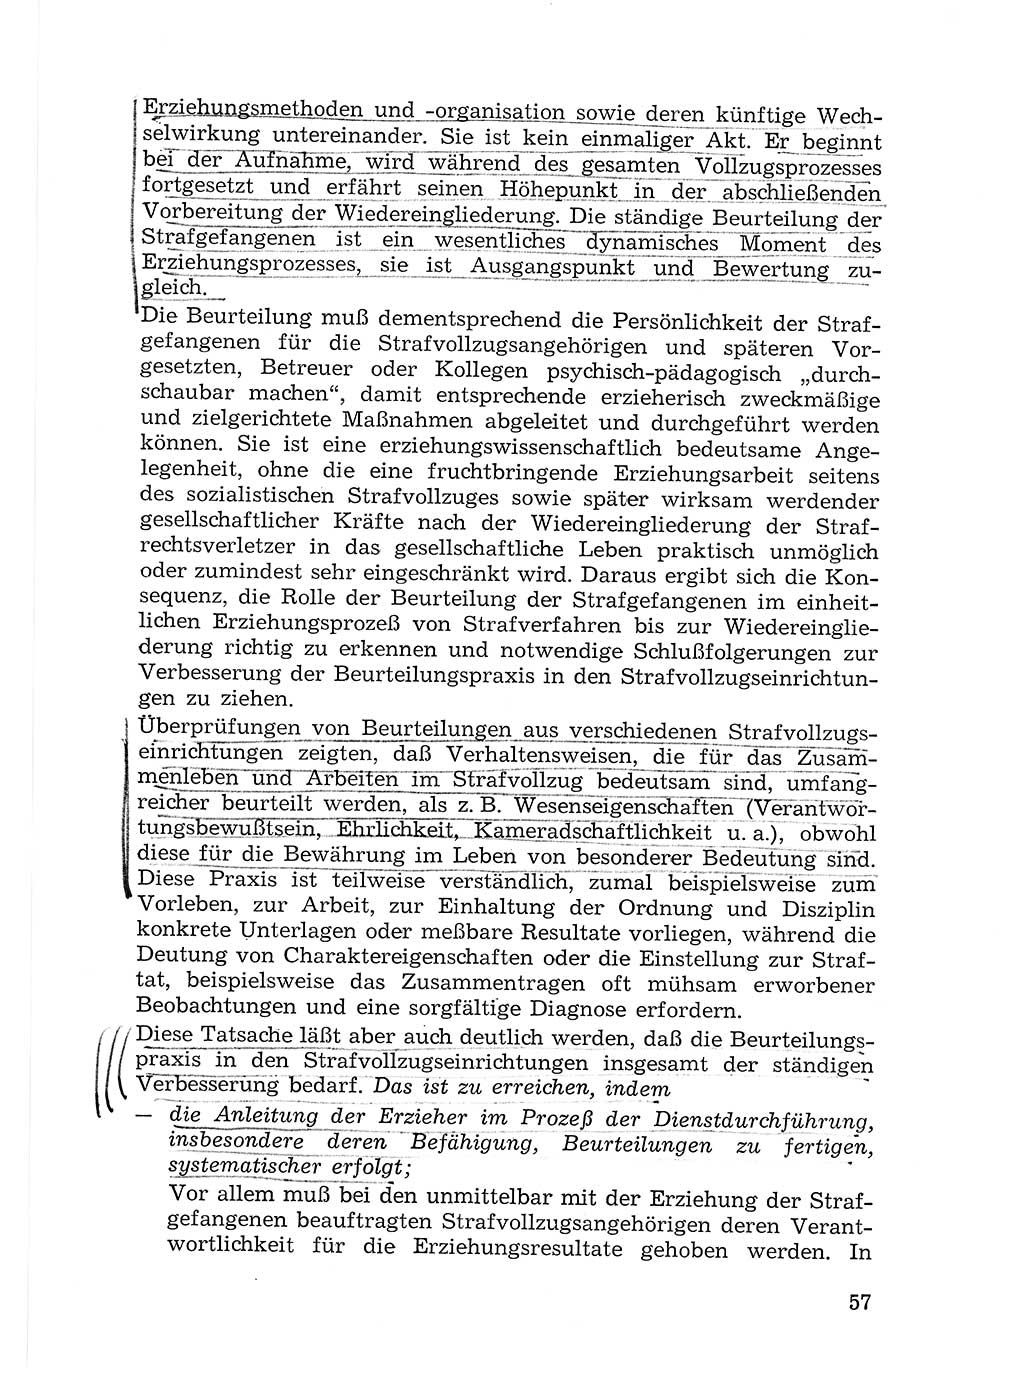 Sozialistischer Strafvollzug (SV) [Deutsche Demokratische Republik (DDR)] 1972, Seite 57 (Soz. SV DDR 1972, S. 57)